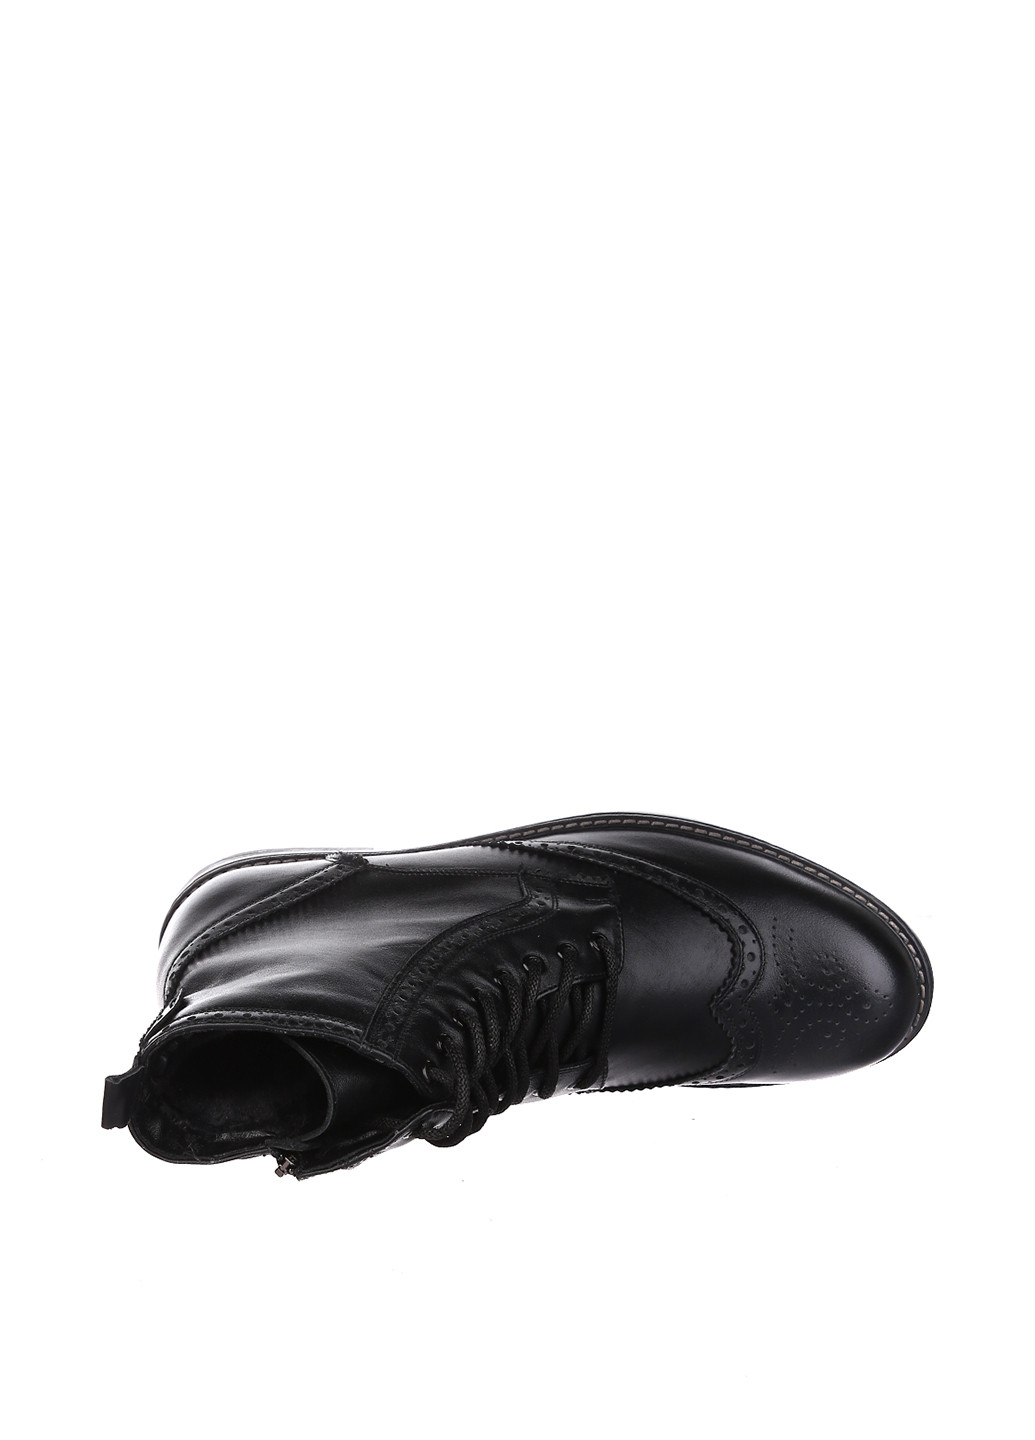 Черные зимние ботинки броги Bistfor